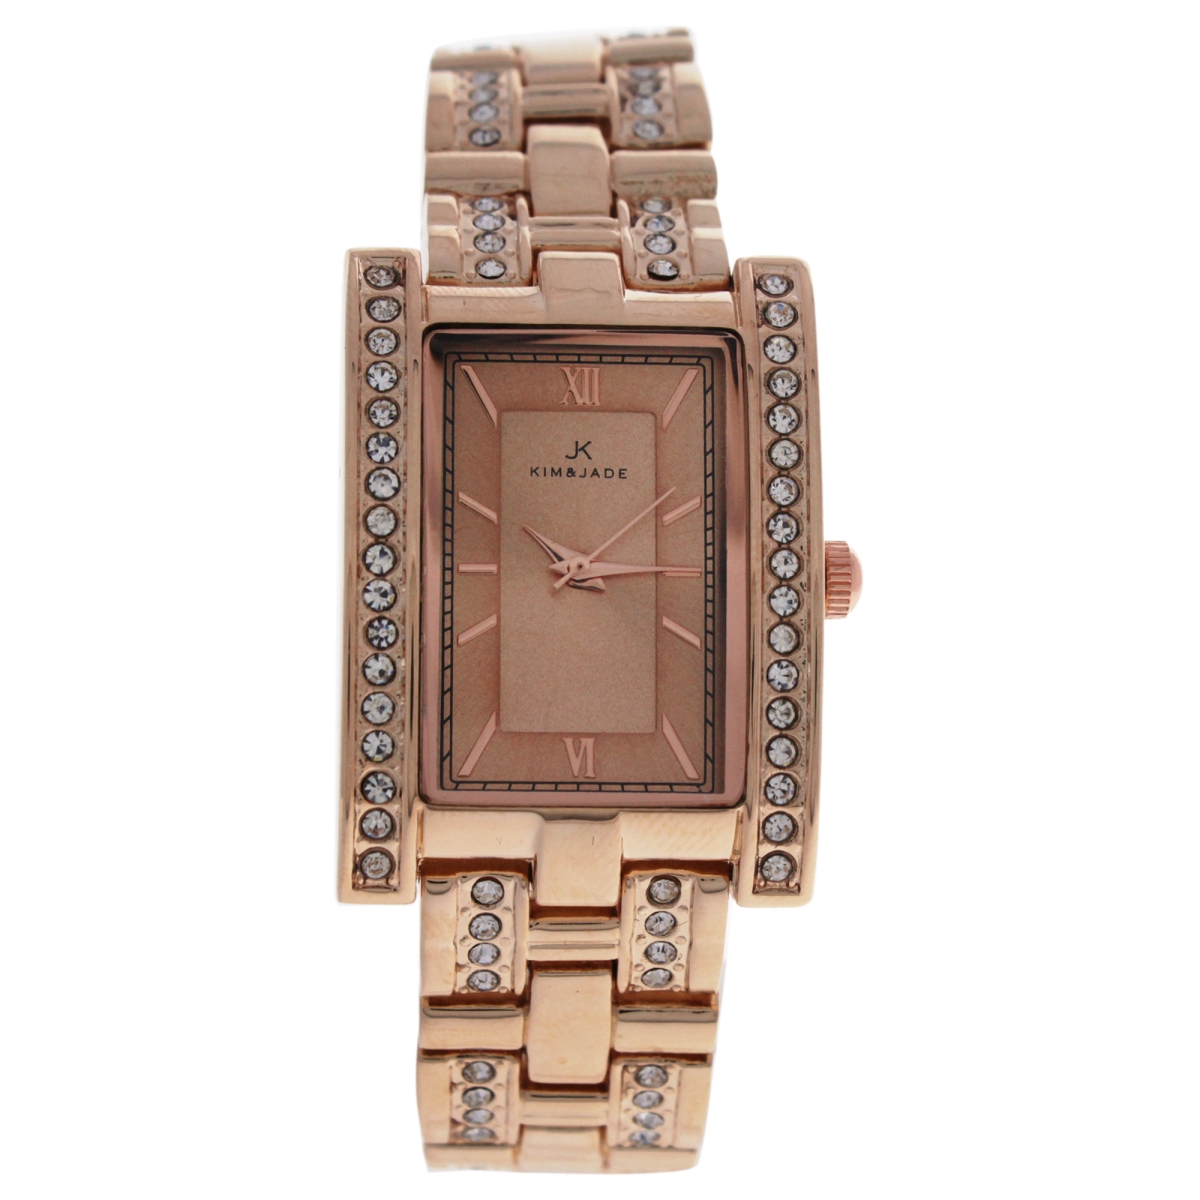 W-wat-1500 Rose Gold Stainless Steel Bracelet Watch For Women - 2060l-gpgp